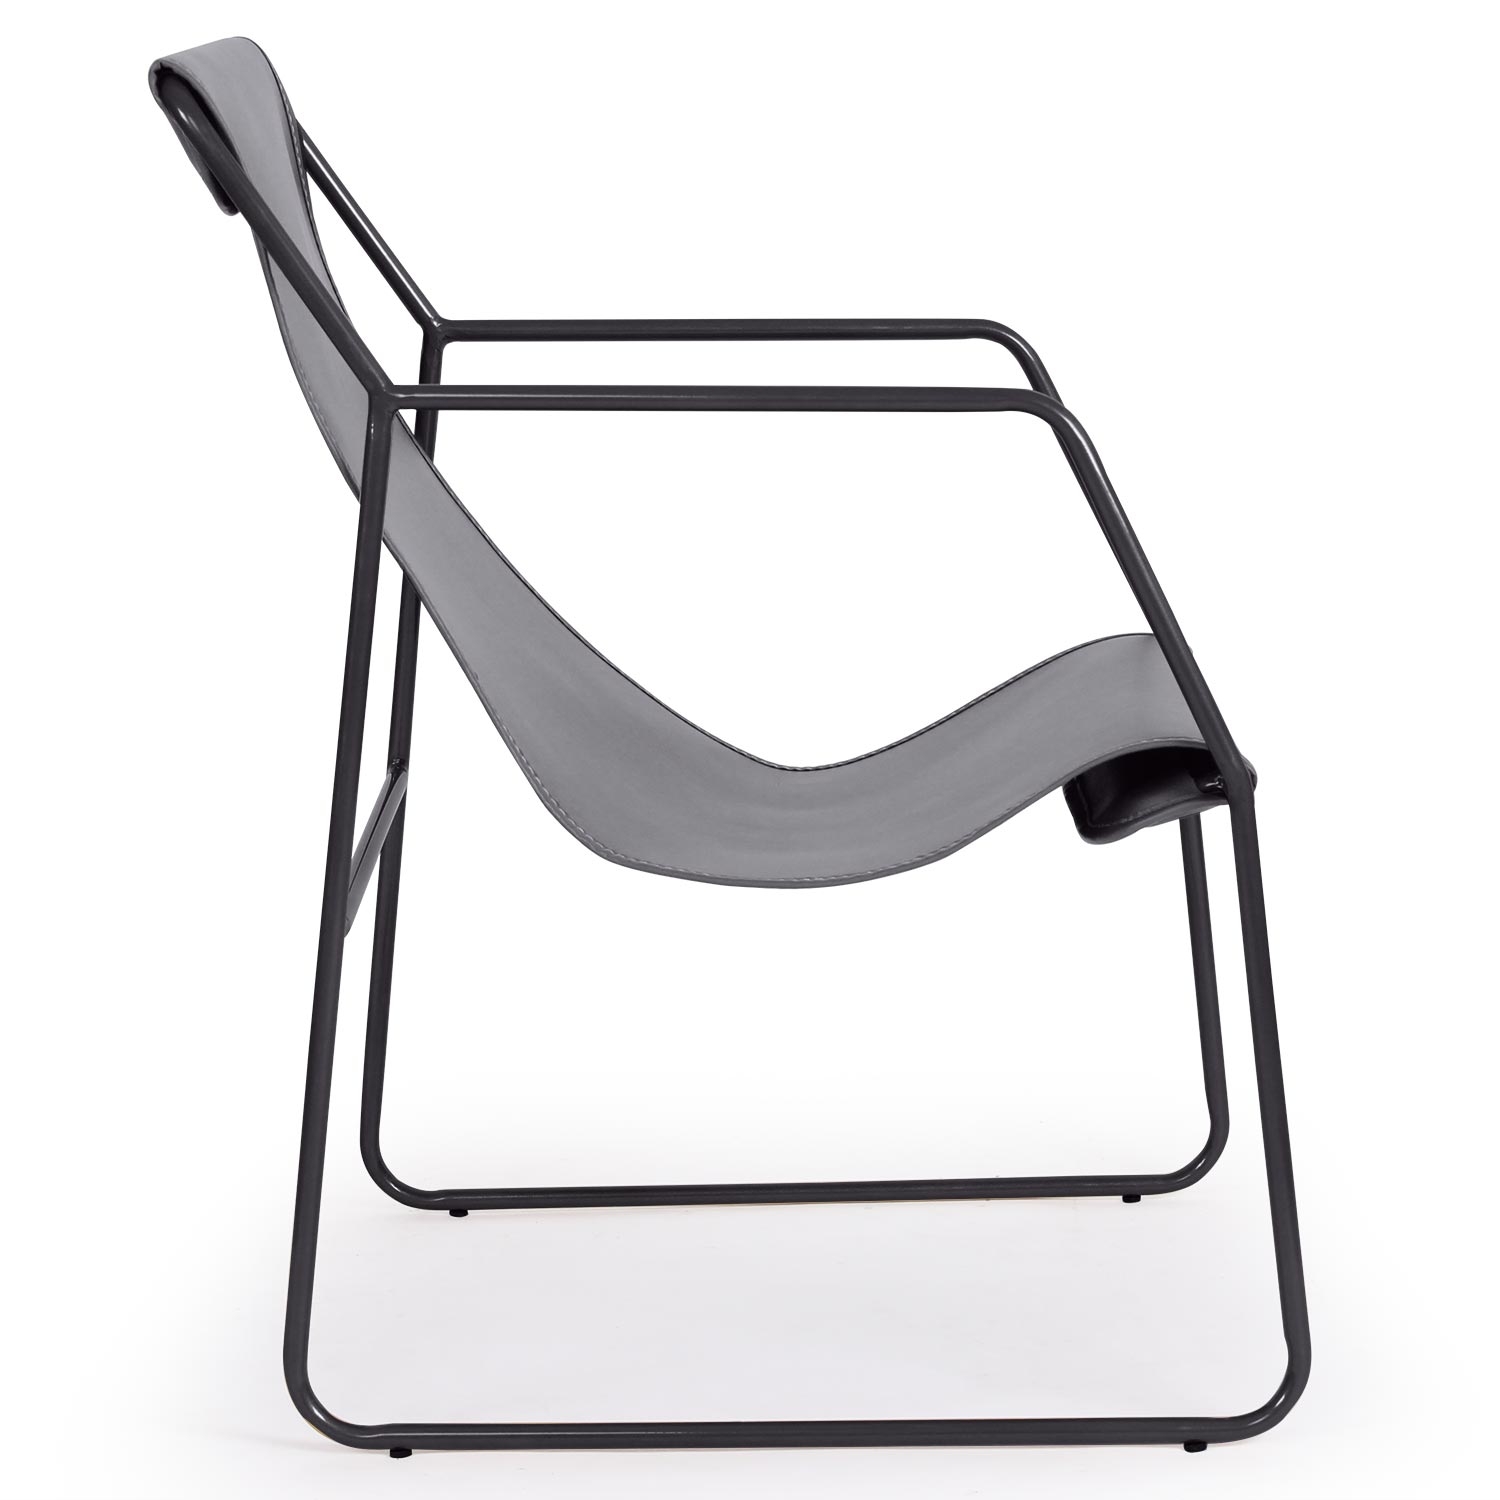 Ulysse fauteuil van zwart metaal en grijs imitatieleer